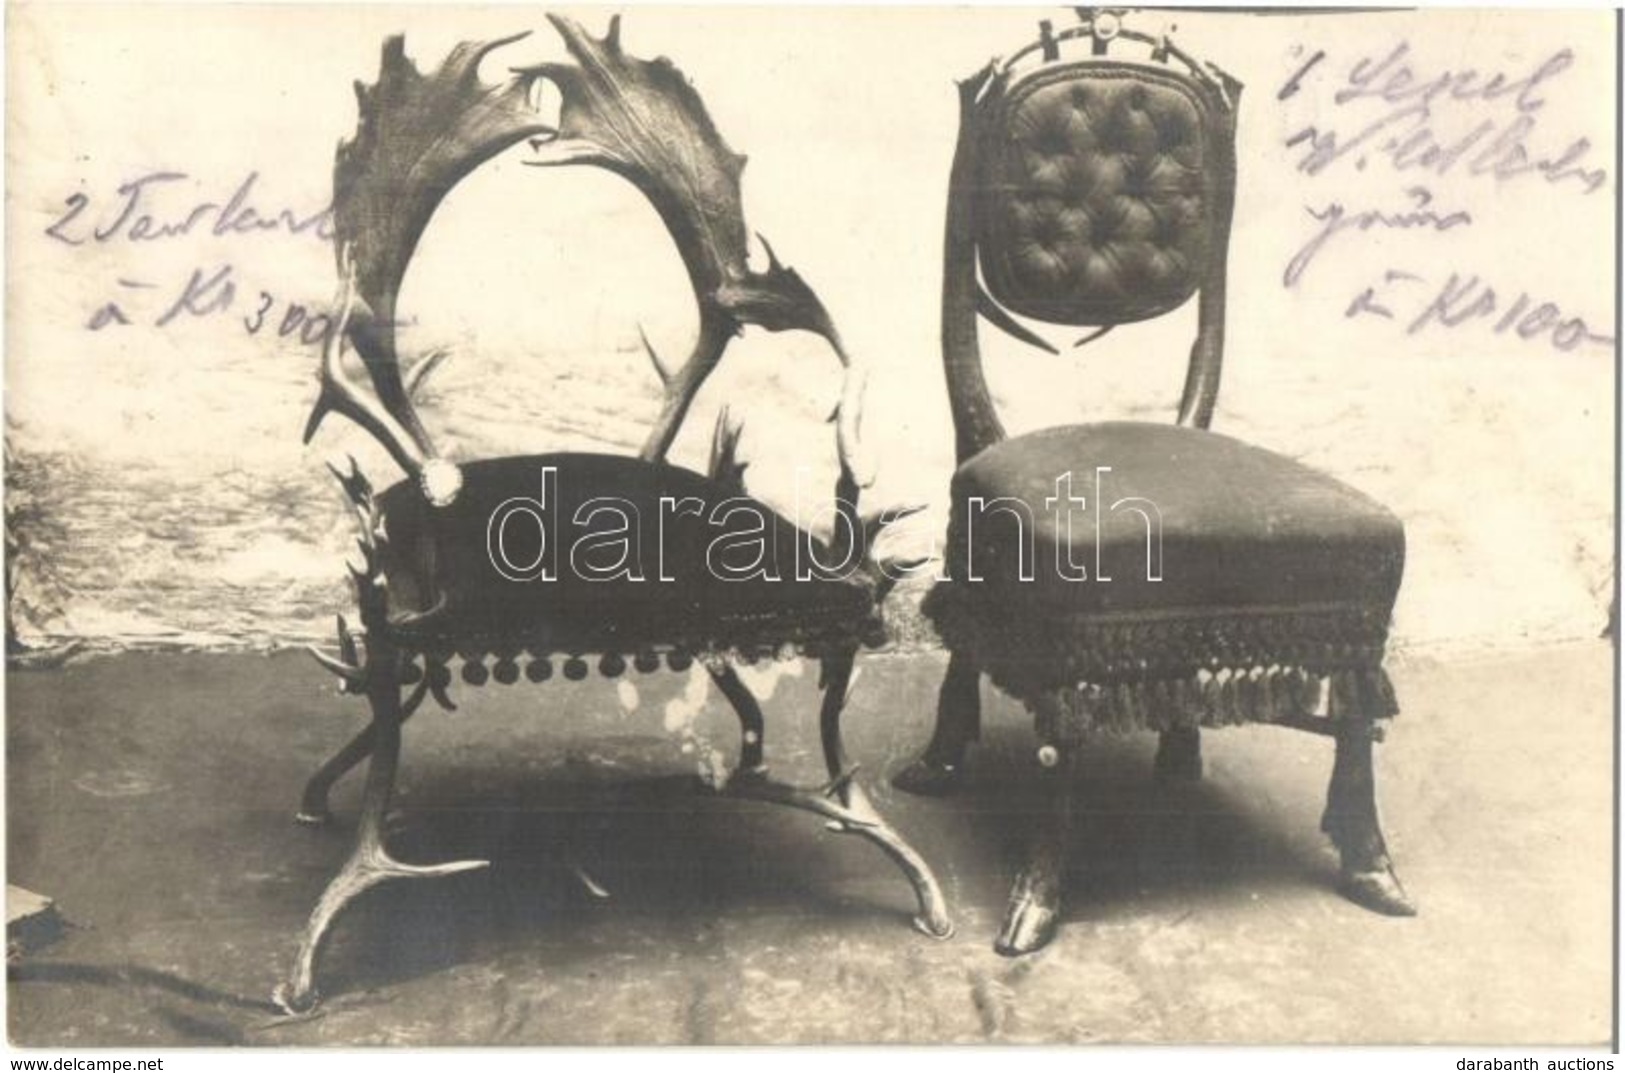 * T2 Szarvas Agancsból Készült, Beárazott Fotelek / Armchairs Made Of Deer Antlers With Prices. Photo - Non Classificati